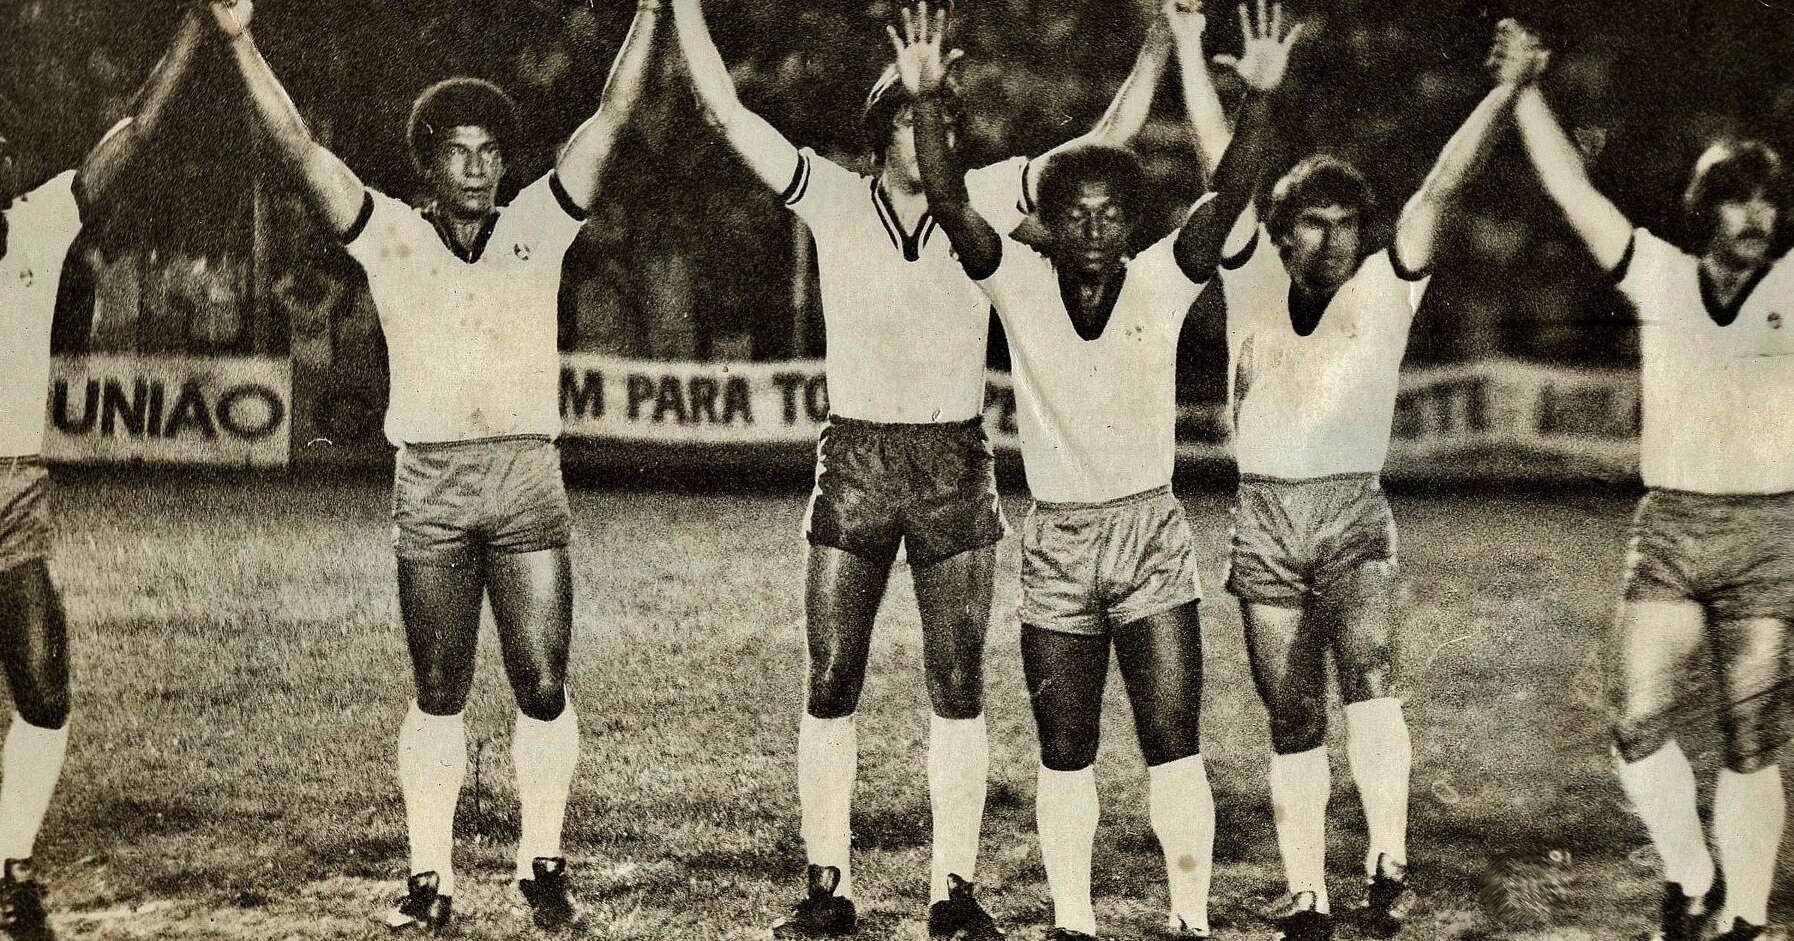 Parte do elenco campeão paranaense - 1980